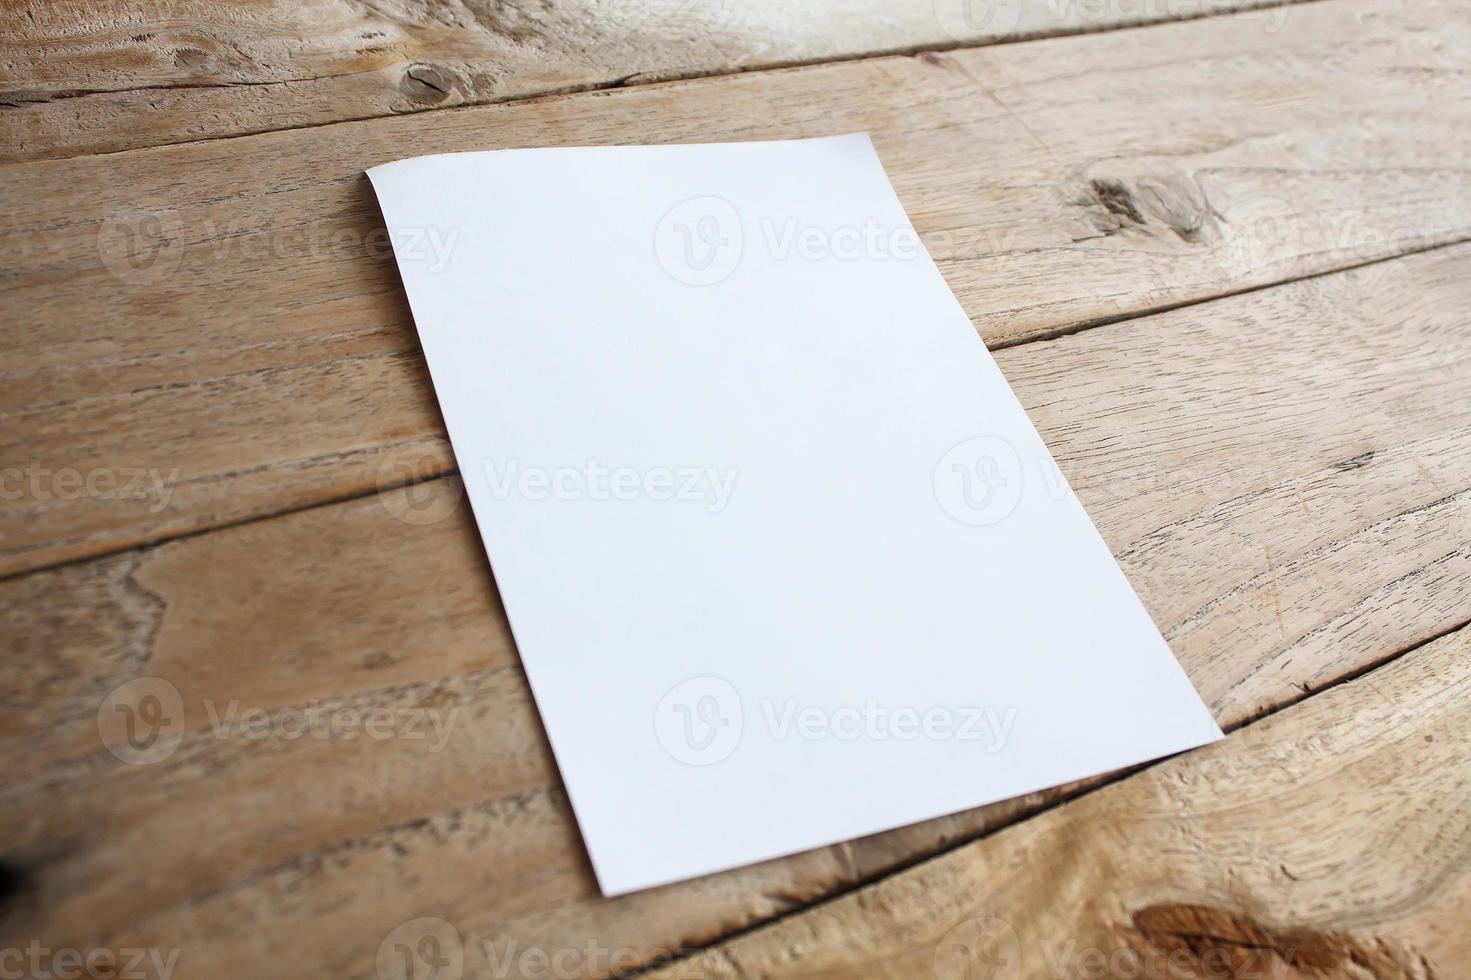 blanco papier op houten tafel foto